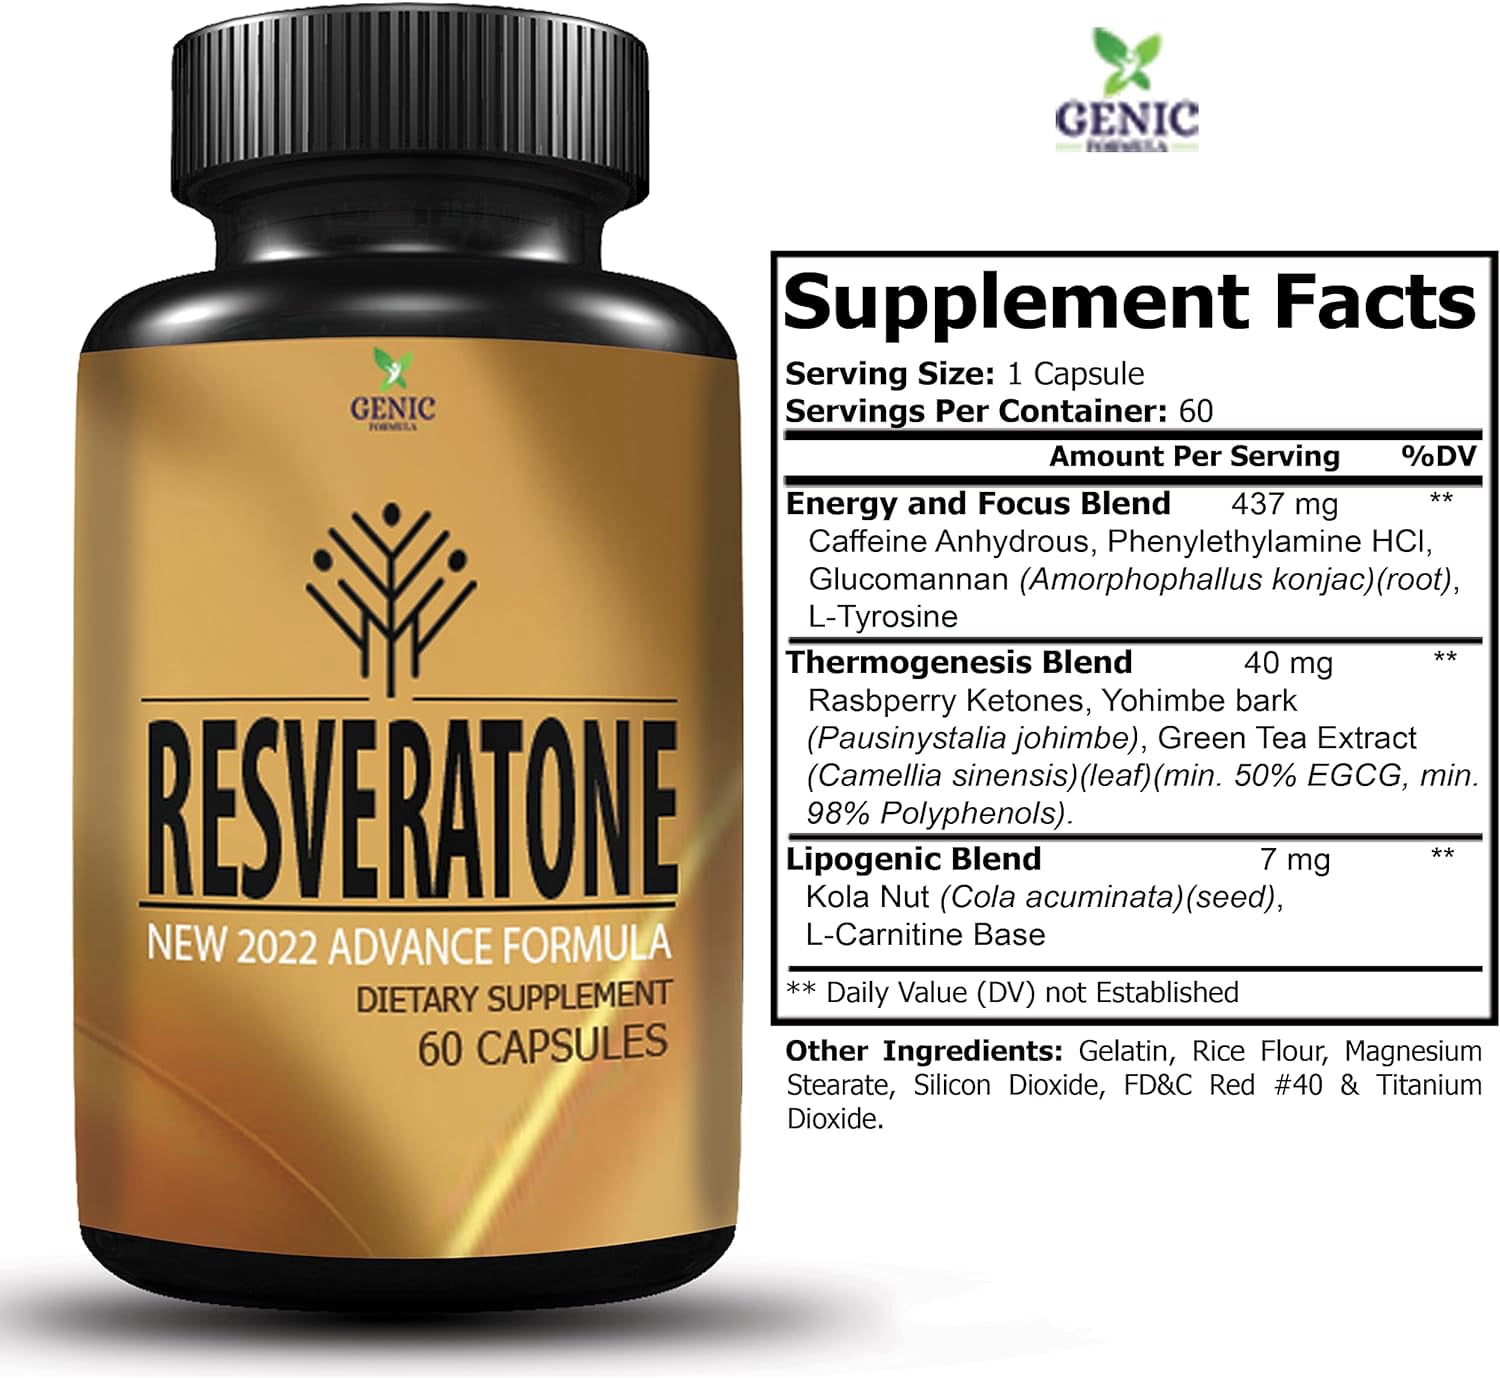 resveratone-facts